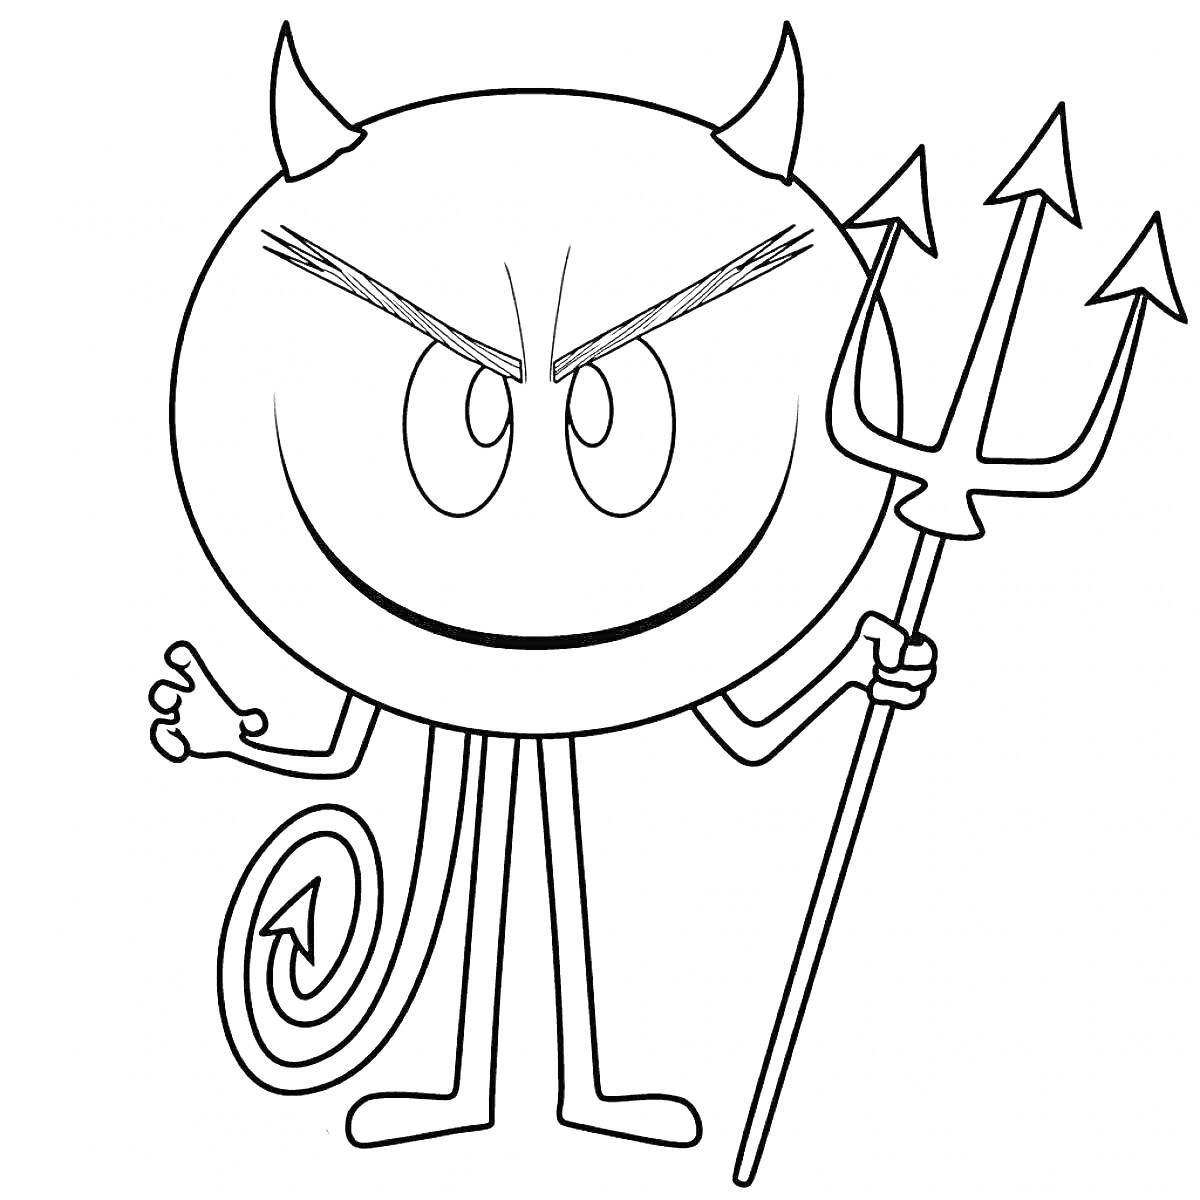 Эмоджи-дьявол, улыбающийся с трезубцем в руке и хвостом в виде спирали